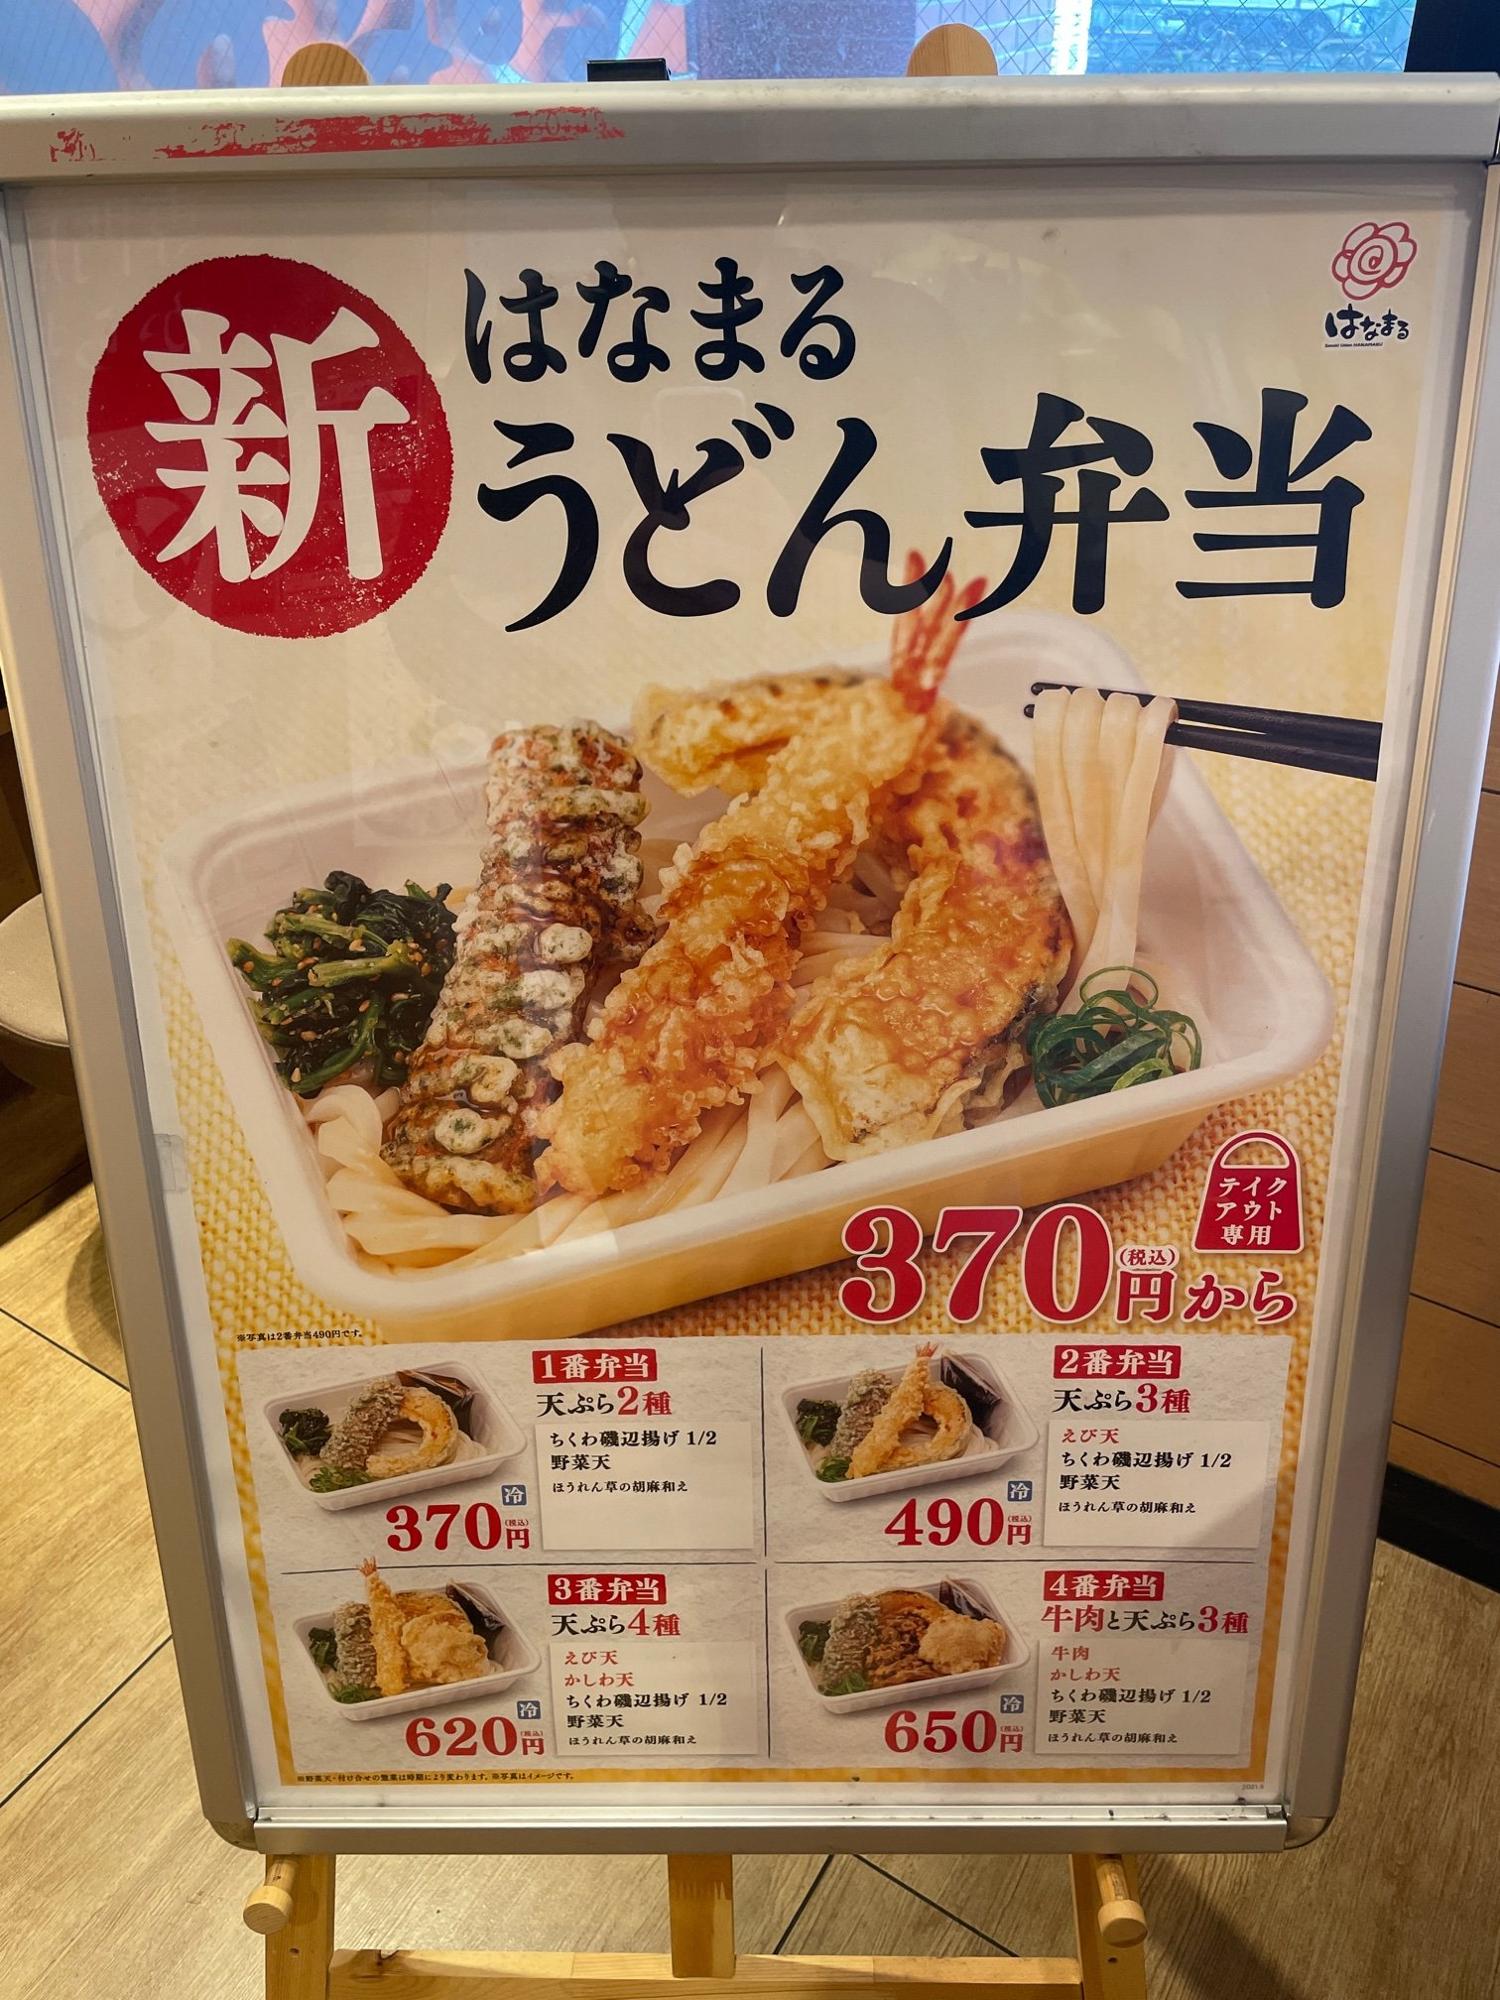 新テイクアウト はなまるうどん弁当 のメニュー2種を食べてみた 進撃のグルメ Yahoo Japan クリエイターズプログラム